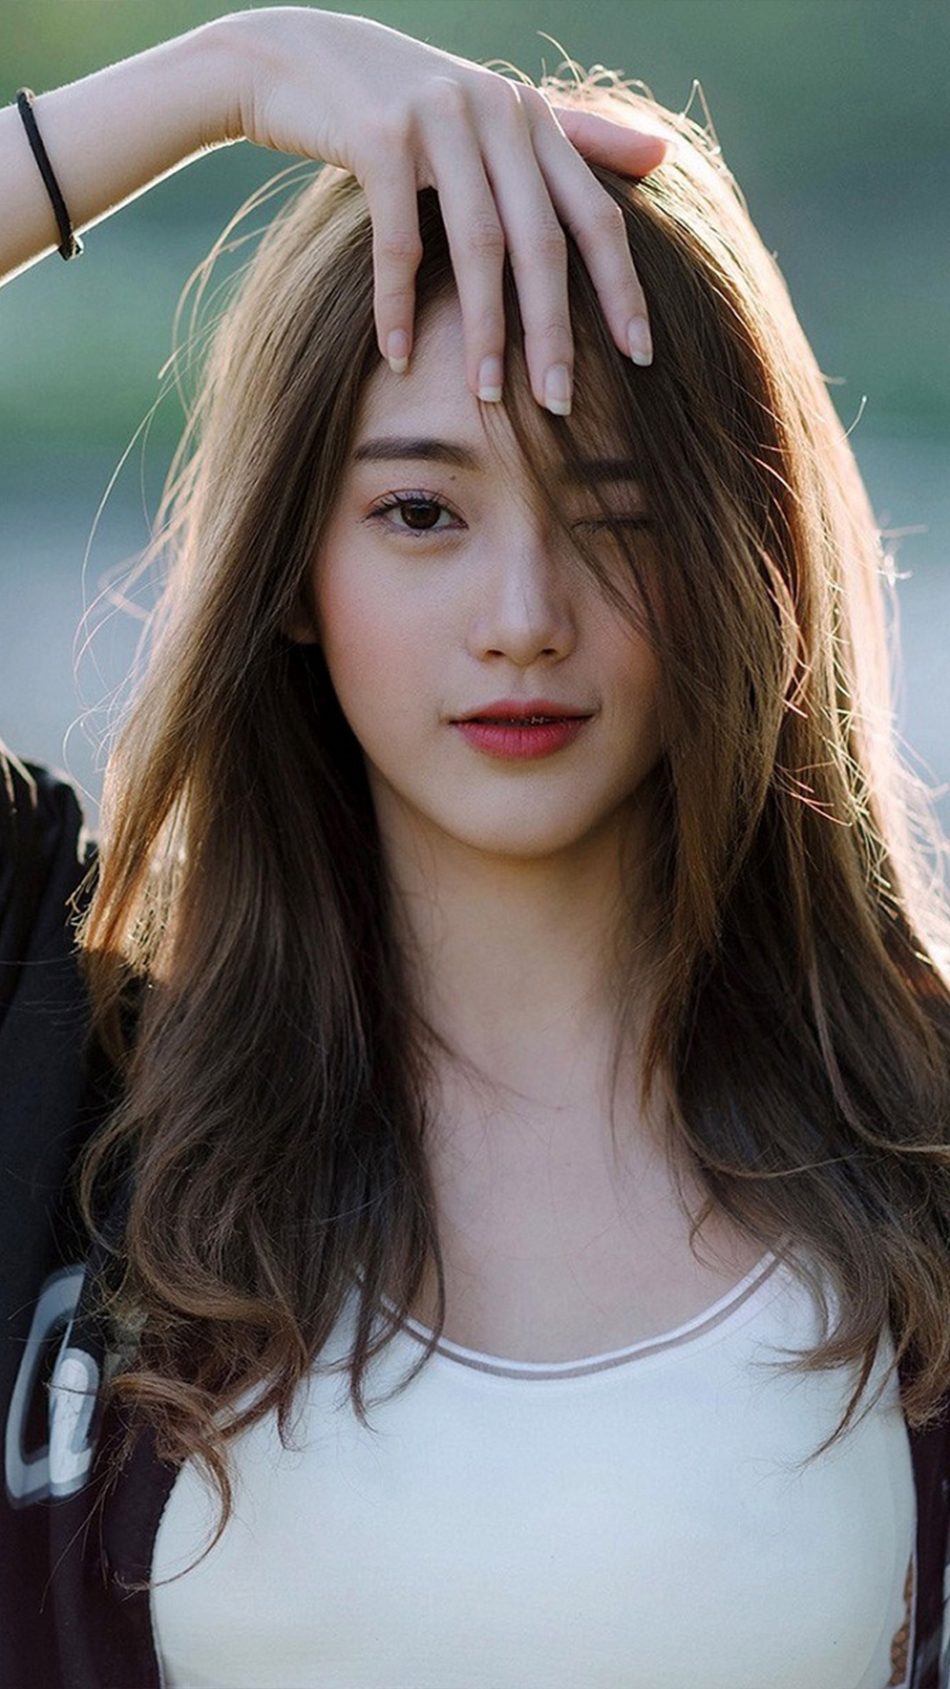 Cute Asian Lady – Telegraph